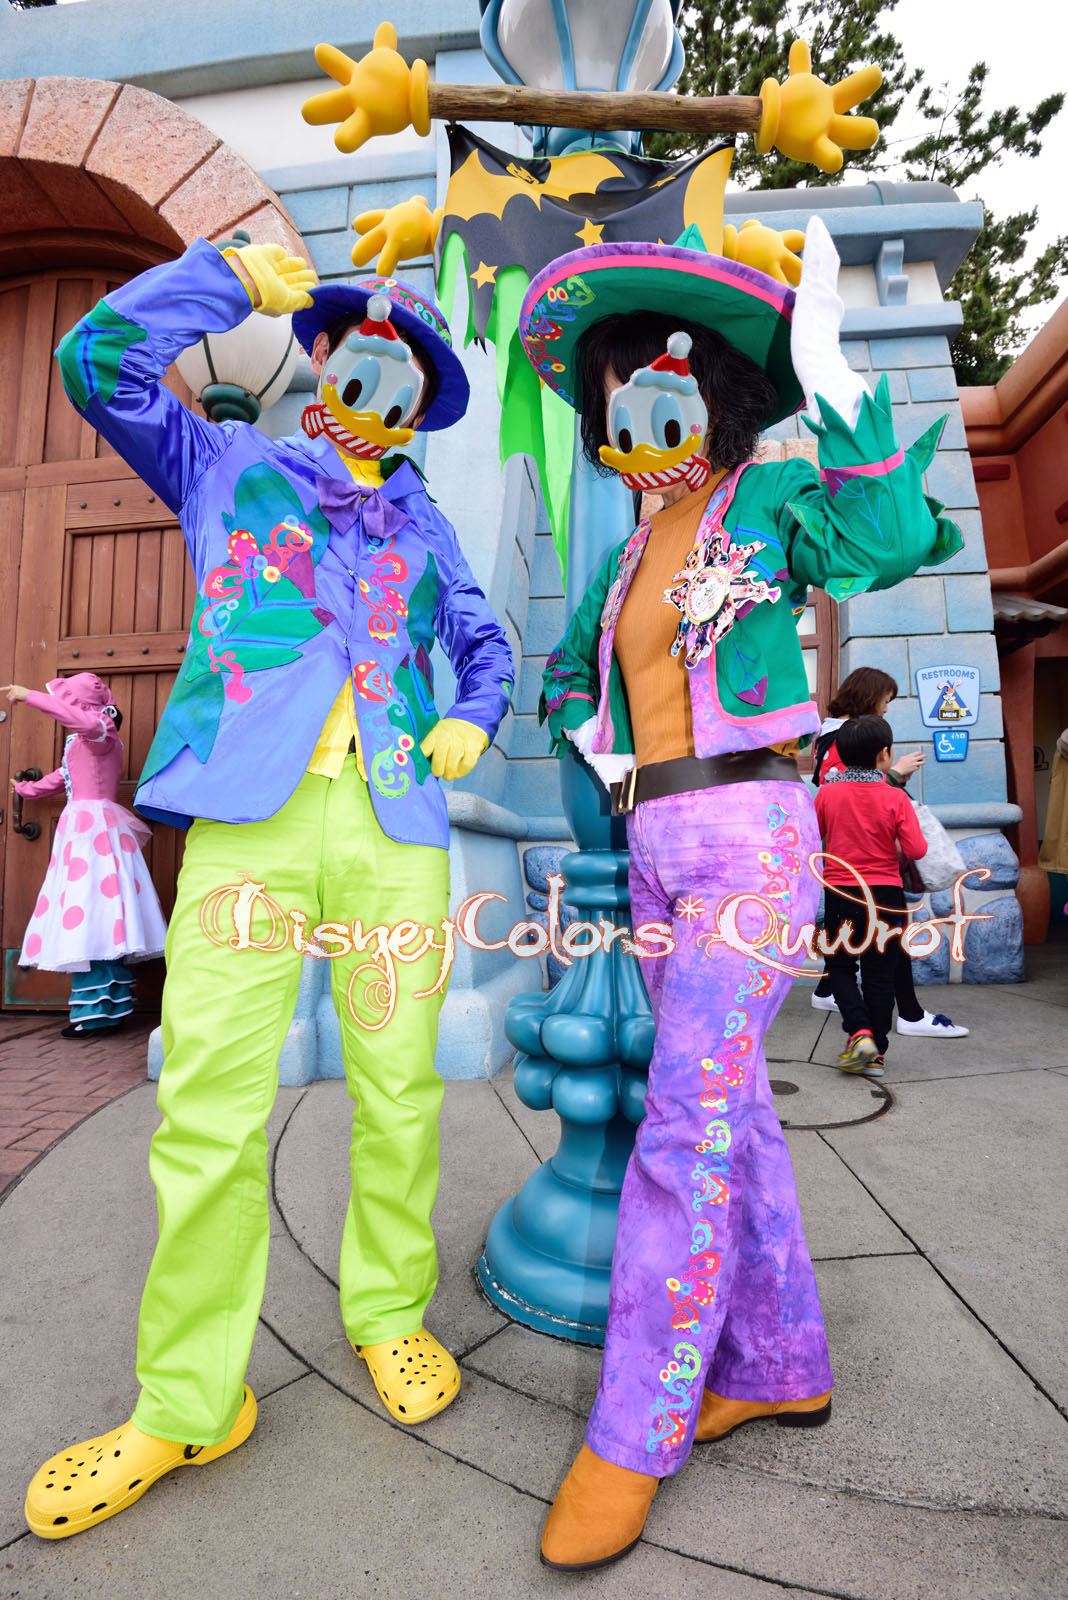 生まれてはじめての仮装 15年11月1日 ディズニーランドのインレポ Disney Colors Blog